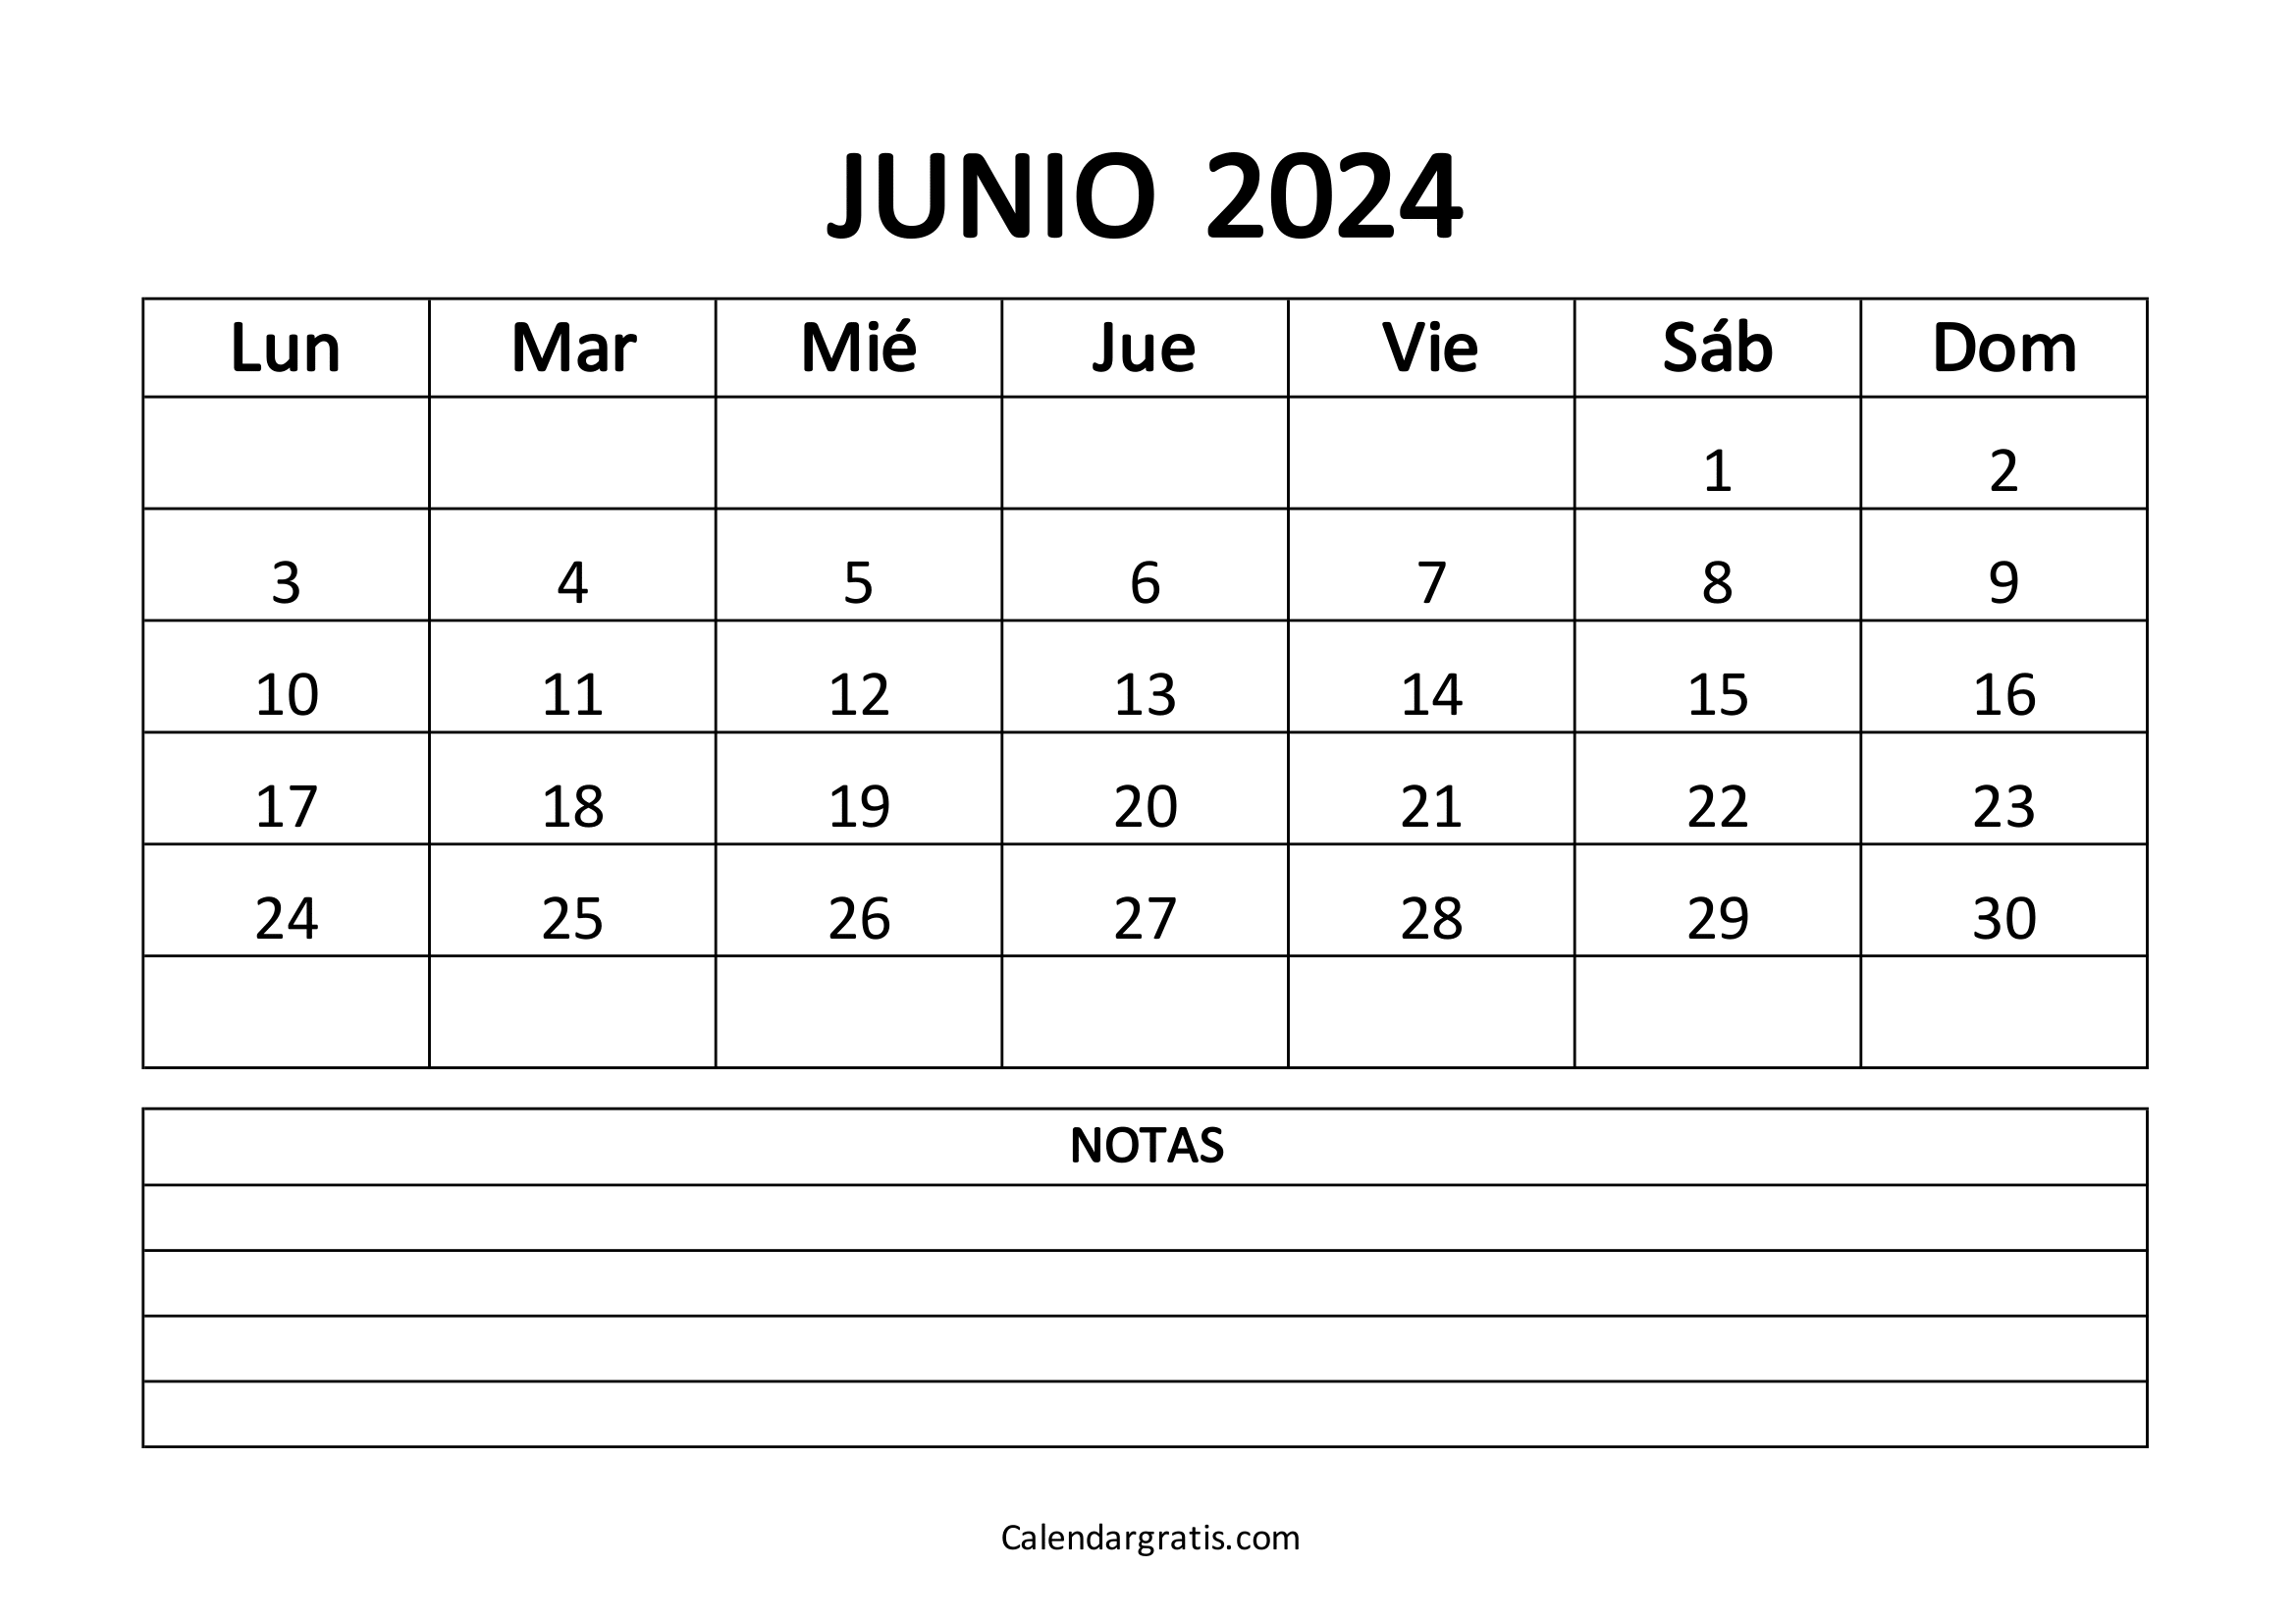 Calendario del mes de junio 2024 para imprimir